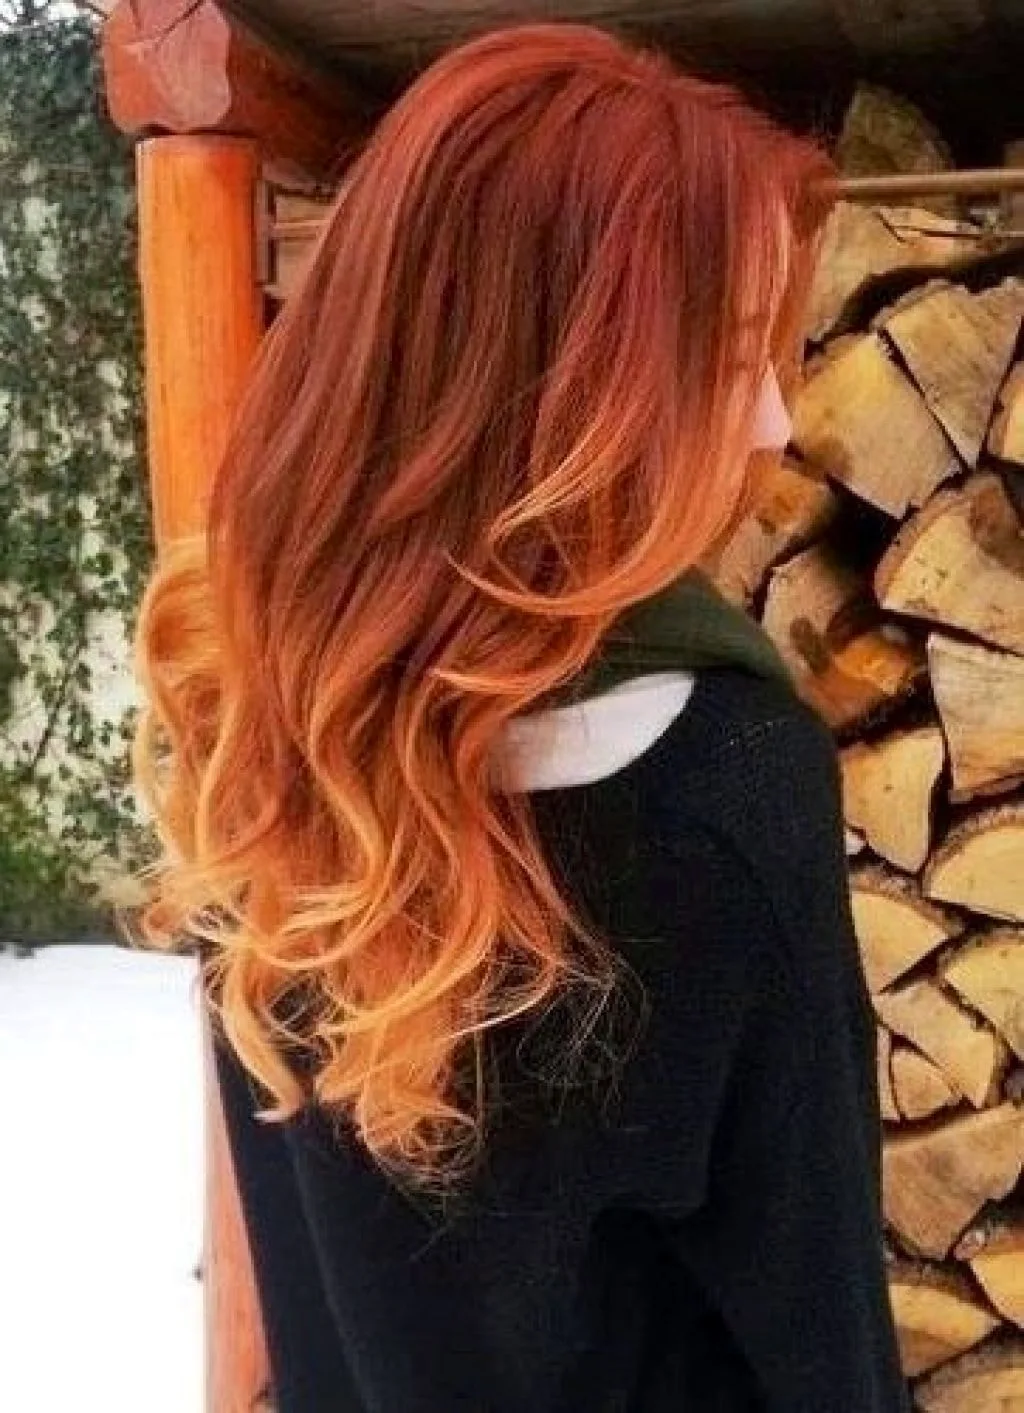 Омбре на рыжие волосы